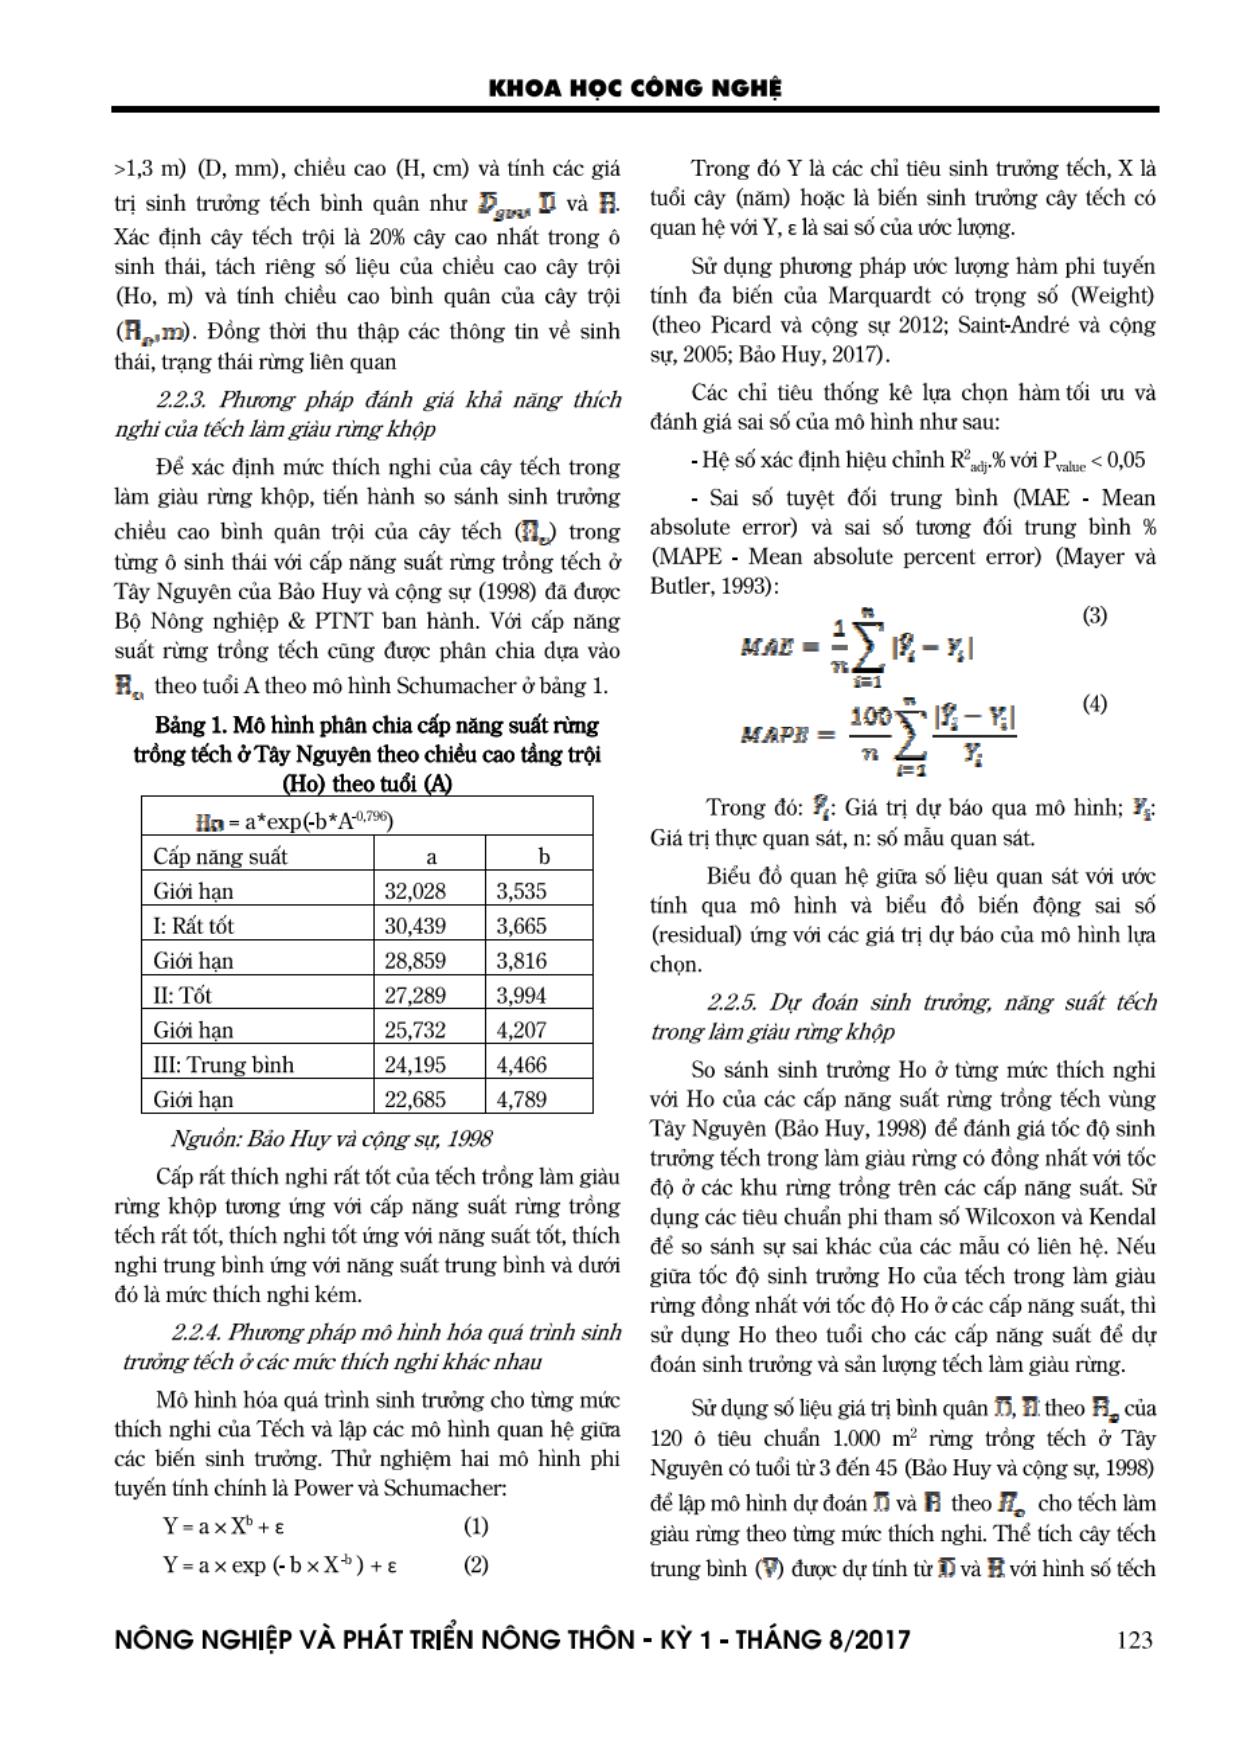 Dự đoán năng suất và hiệu quả kinh tế của cây tếch (Tectona grandis L.F.) trong làm giàu rùng khộp suy thoái trang 5